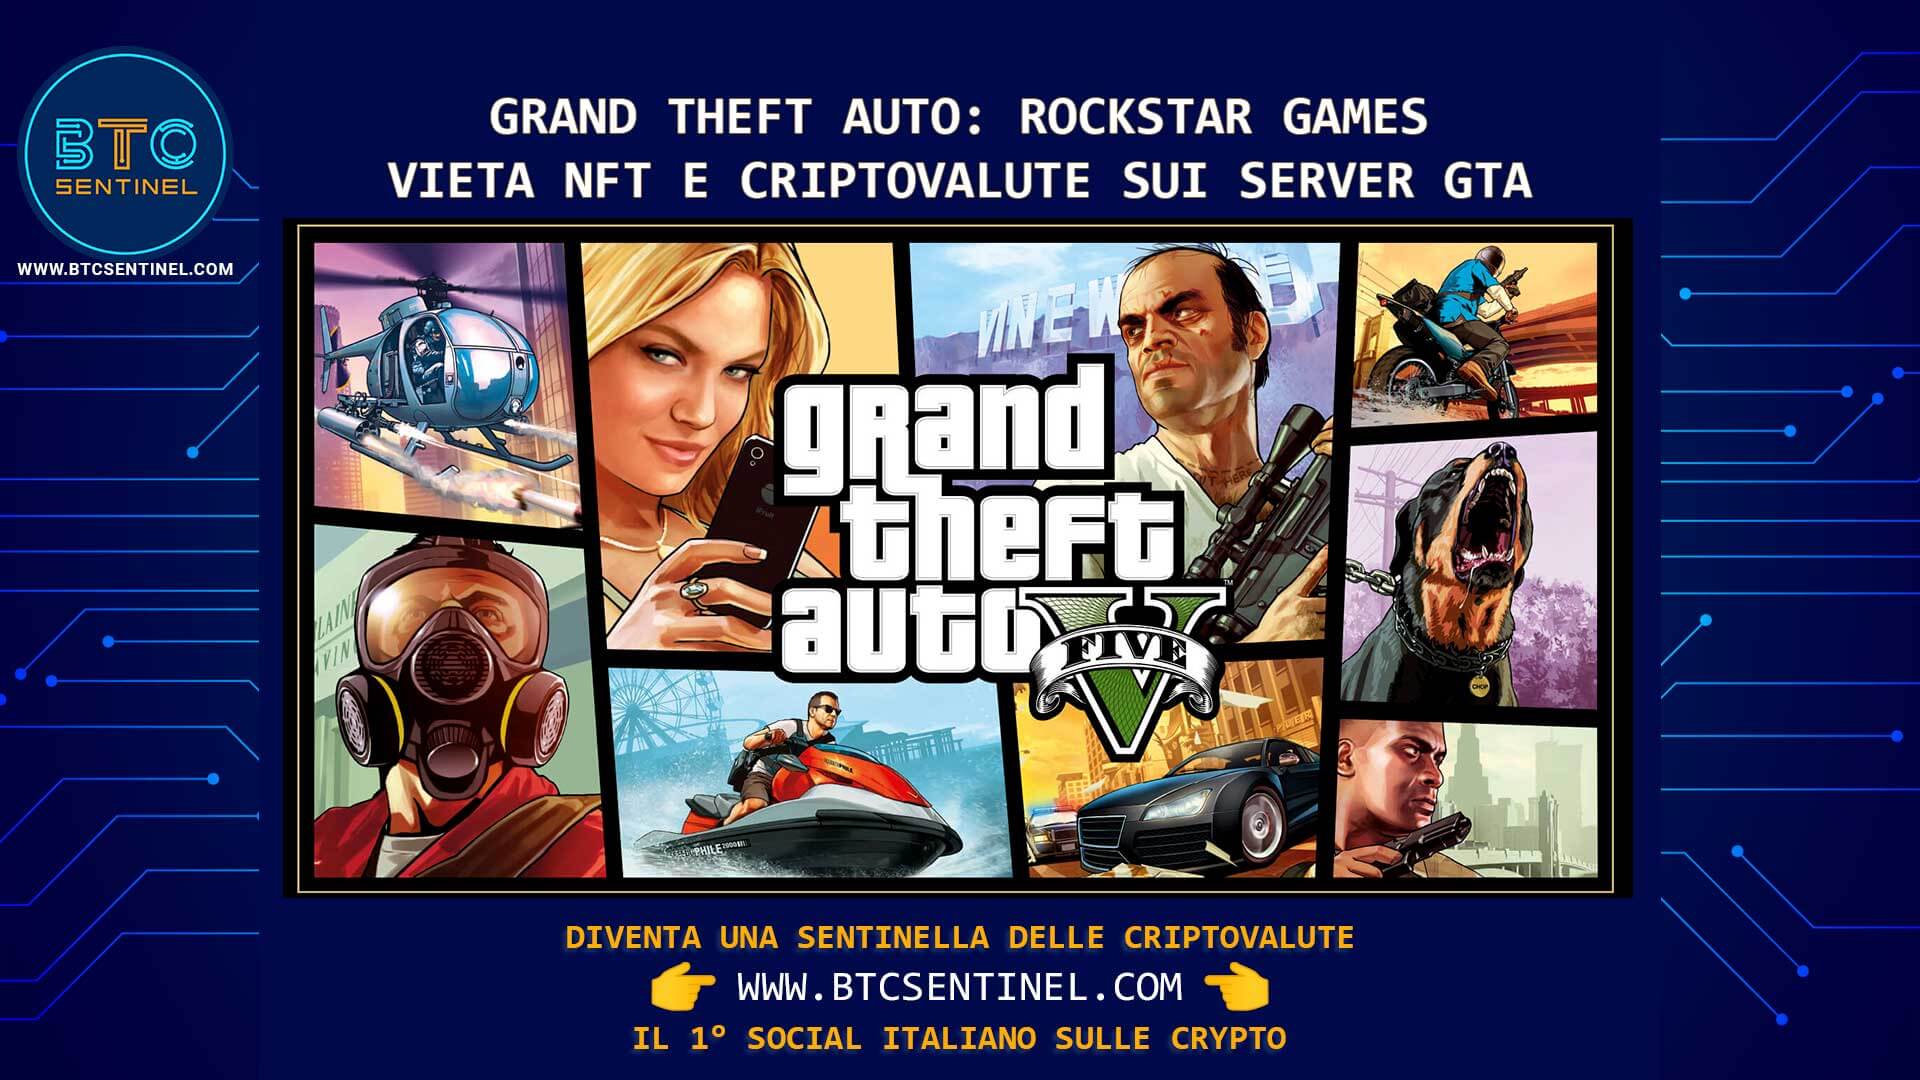 Grand Theft Auto: Rockstar Games vieta NFT su server GTA